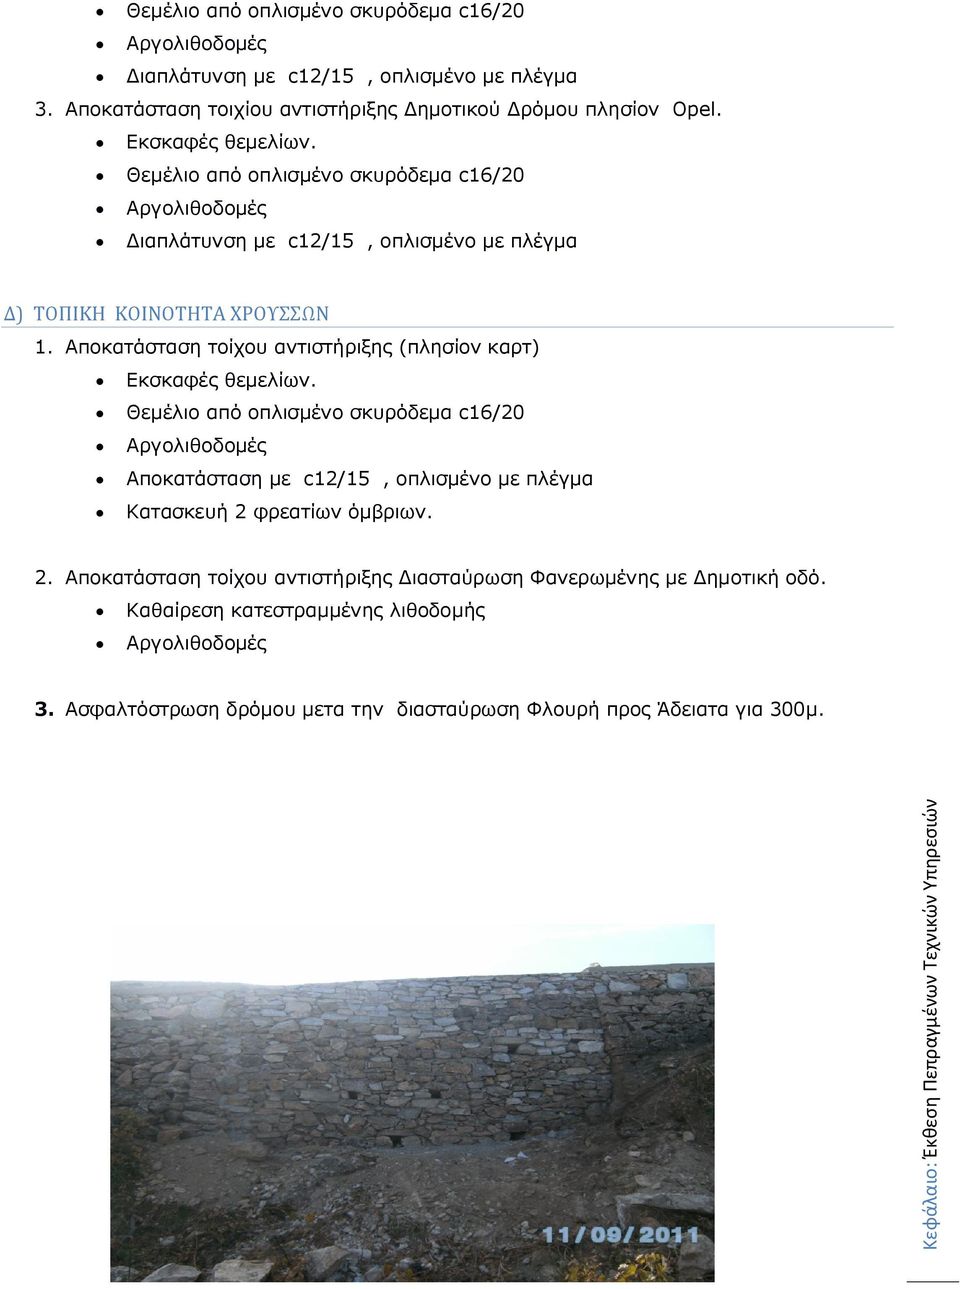 Αποκατάσταση τοίχου αντιστήριξης (πλησίον καρτ) Εκσκαφές θεμελίων.